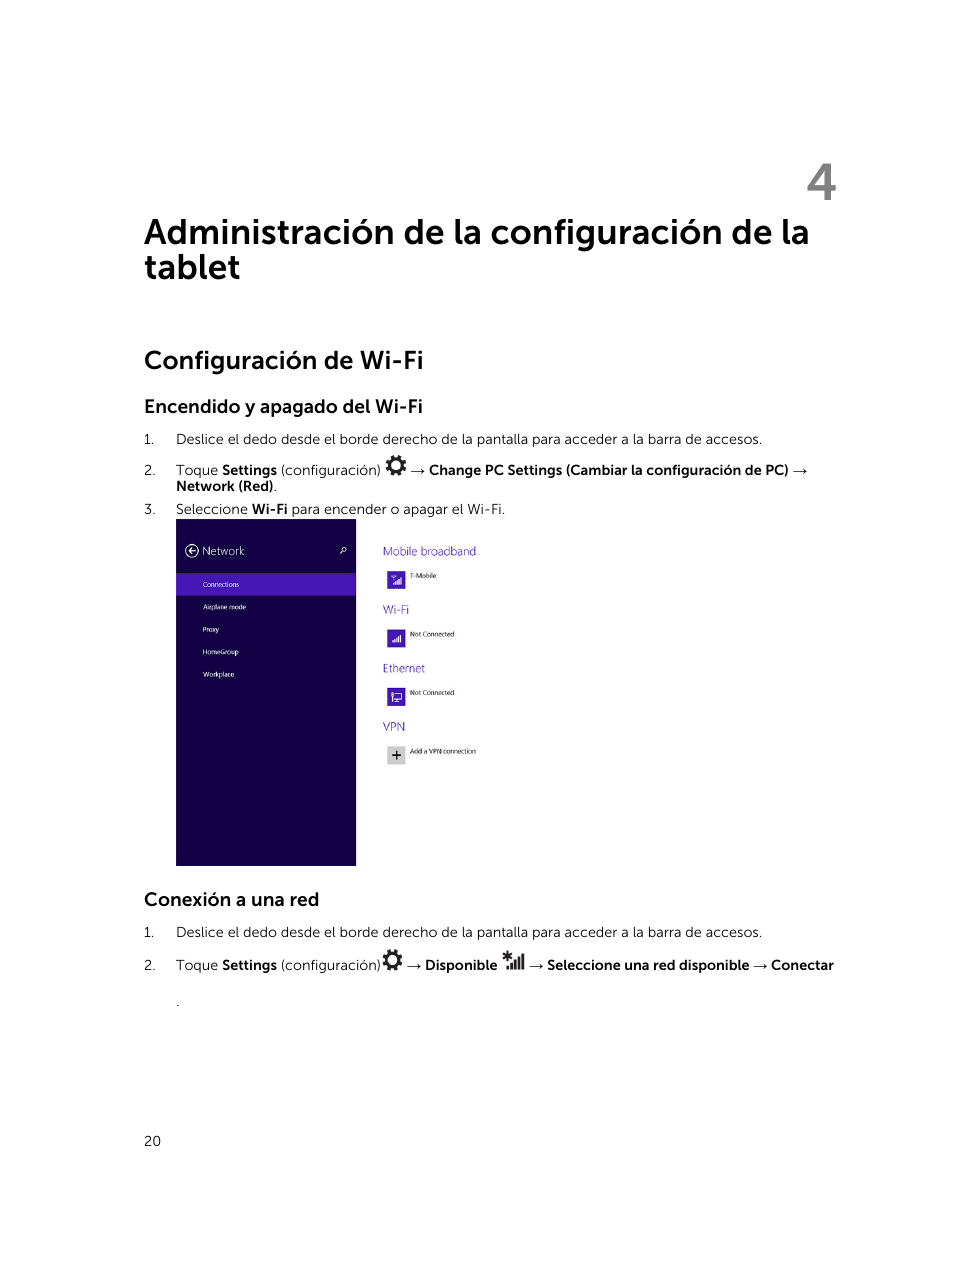 Administración de la configuración de la tablet, Configuración de wi-fi, Encendido y apagado del wi-ficonexión a una red | 4 administración de la configuración de la tablet | Dell Venue 11 Pro (7140, Late 2014) Manual del usuario | Página 20 / 58